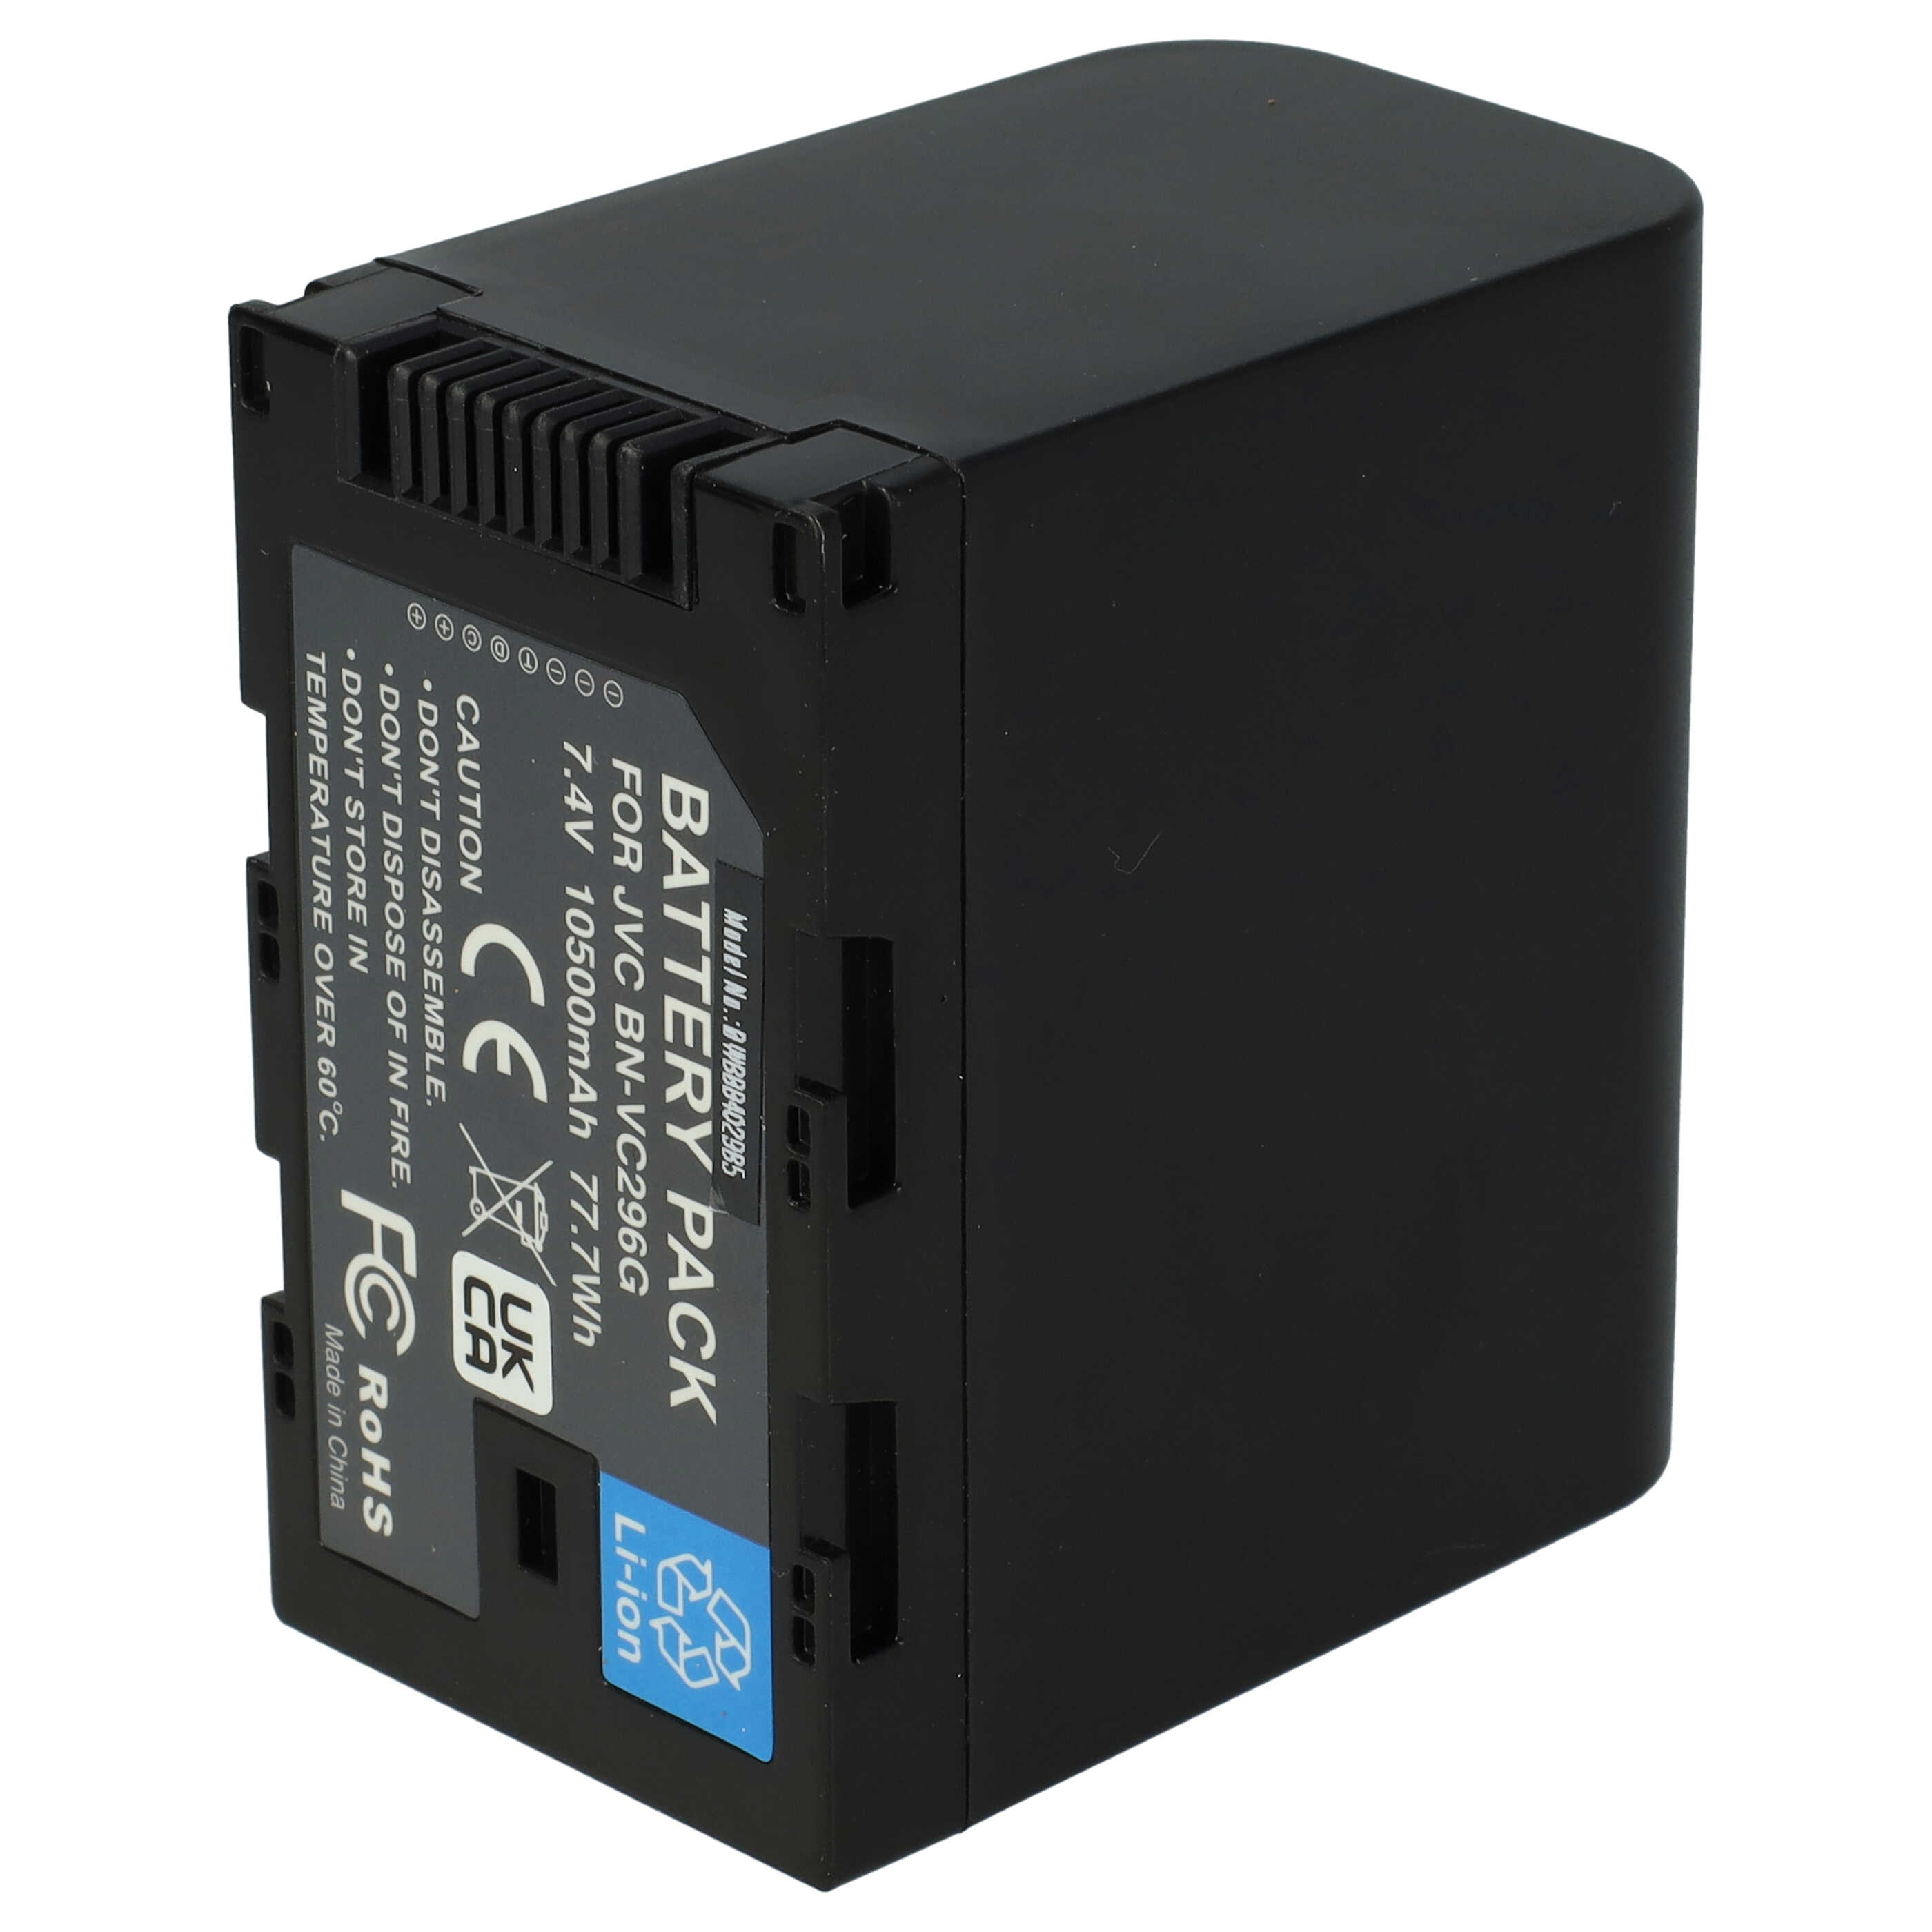 Videocamera Battery Replacement for JVC BN-VC298G, BN-VC296G, BN-VC264G - 10500mAh 7.4V Li-Ion